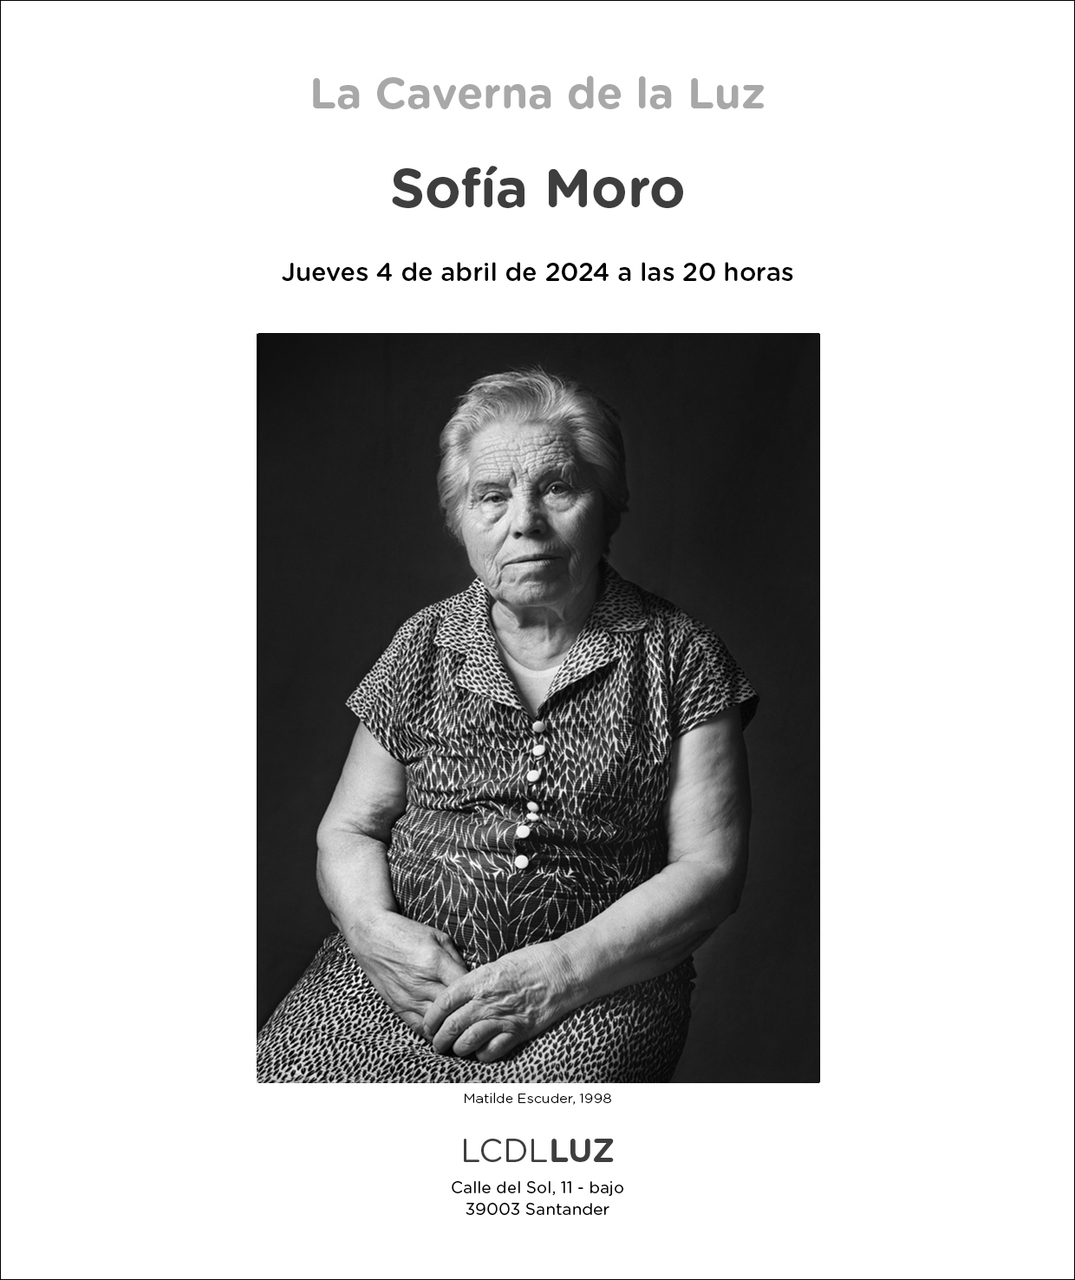 Una imagen de Sofía Moro alumbra en abril el escaparate de LCDLLuz